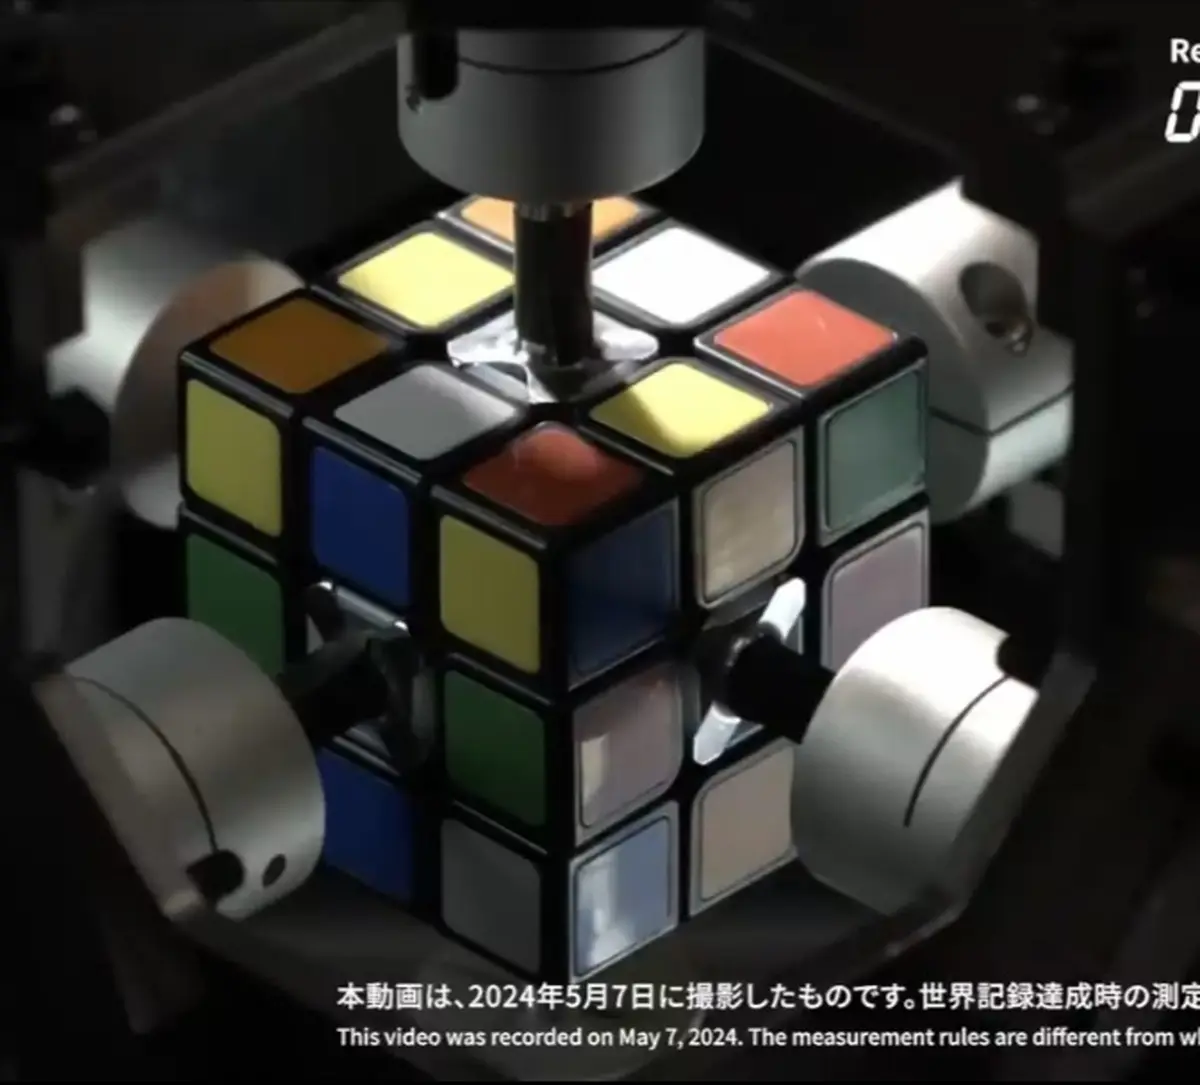 حل مکعب روبیک در ۰.۳۰۵ تانیه توسط ربات ژاپنی! +ویدیو
